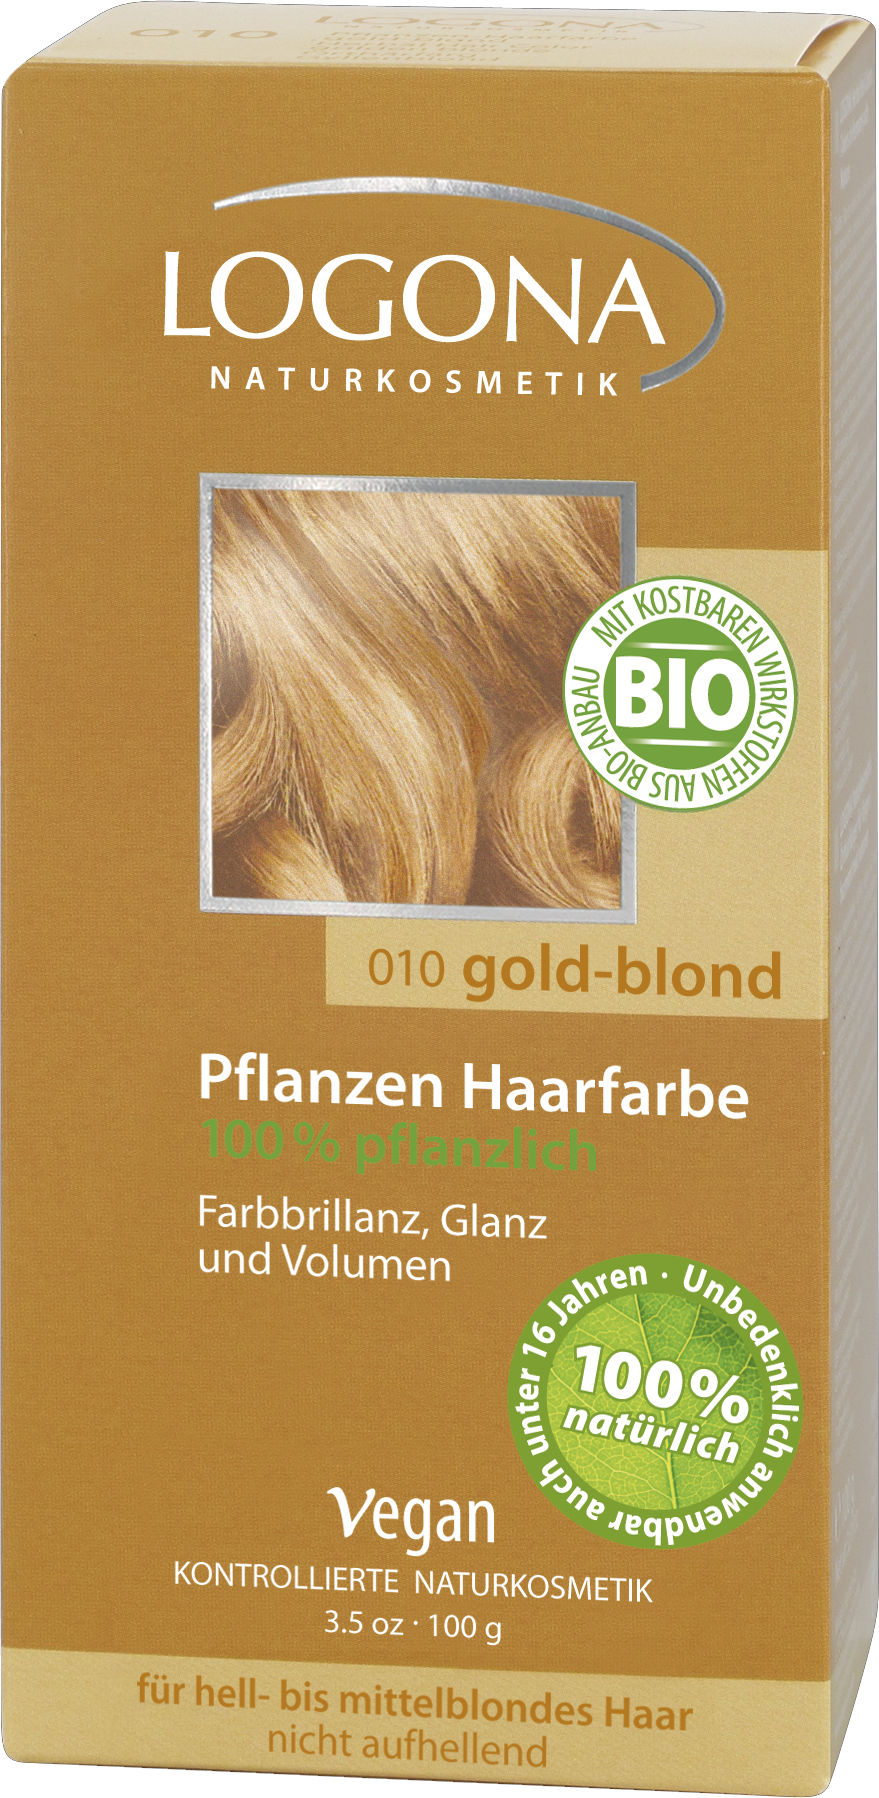 Pflegende | Pulver Naturkosmetik Pflanzen-Haarfarbe Goldblond LOGONA